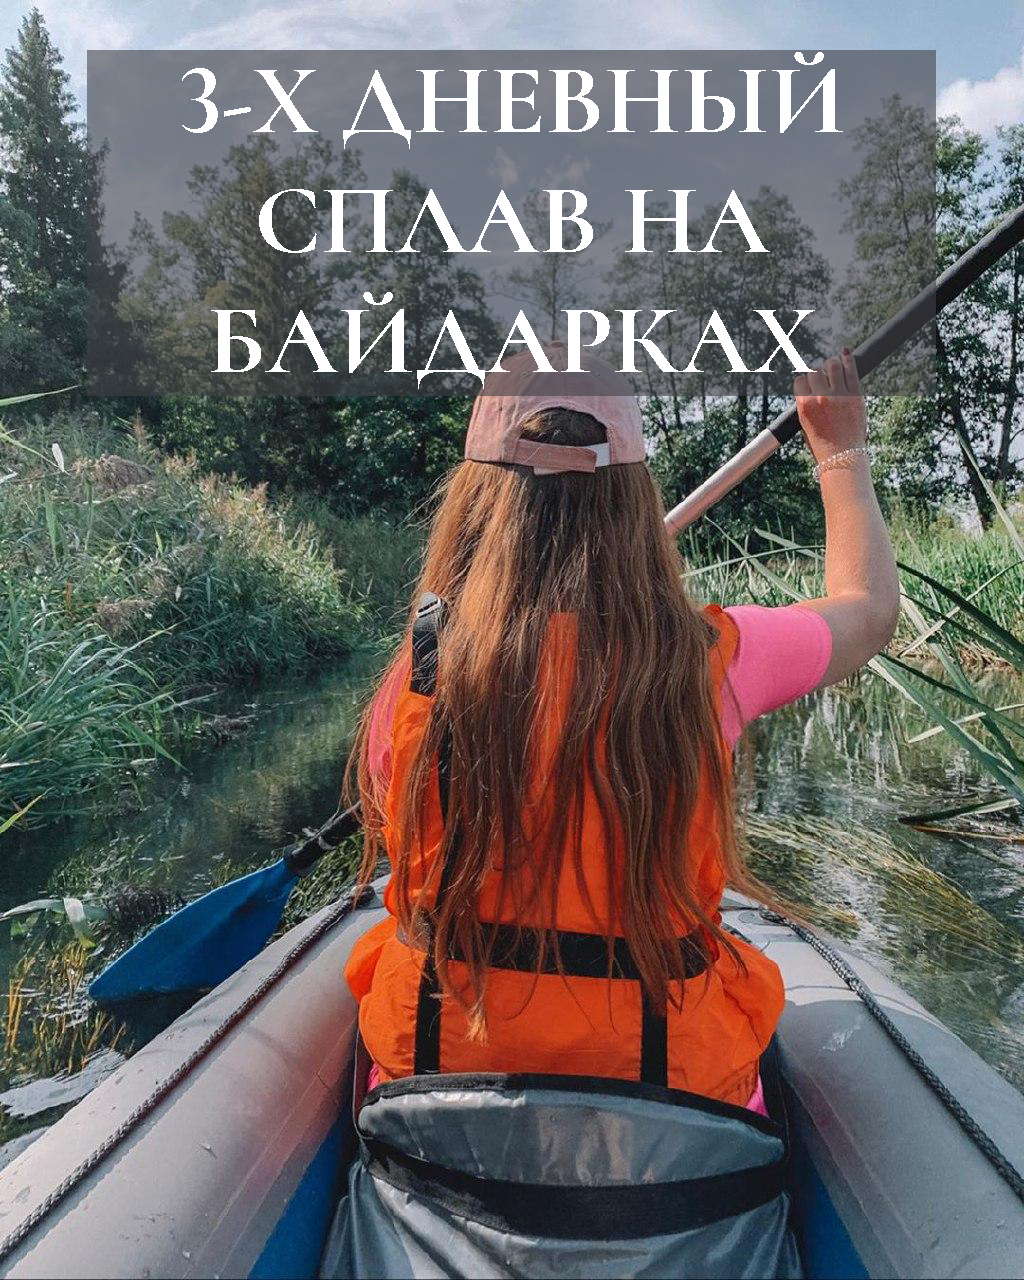 3-х трех дневный на выходные дни сплав на байдарках по рекам Беларуси из Минска водный поход